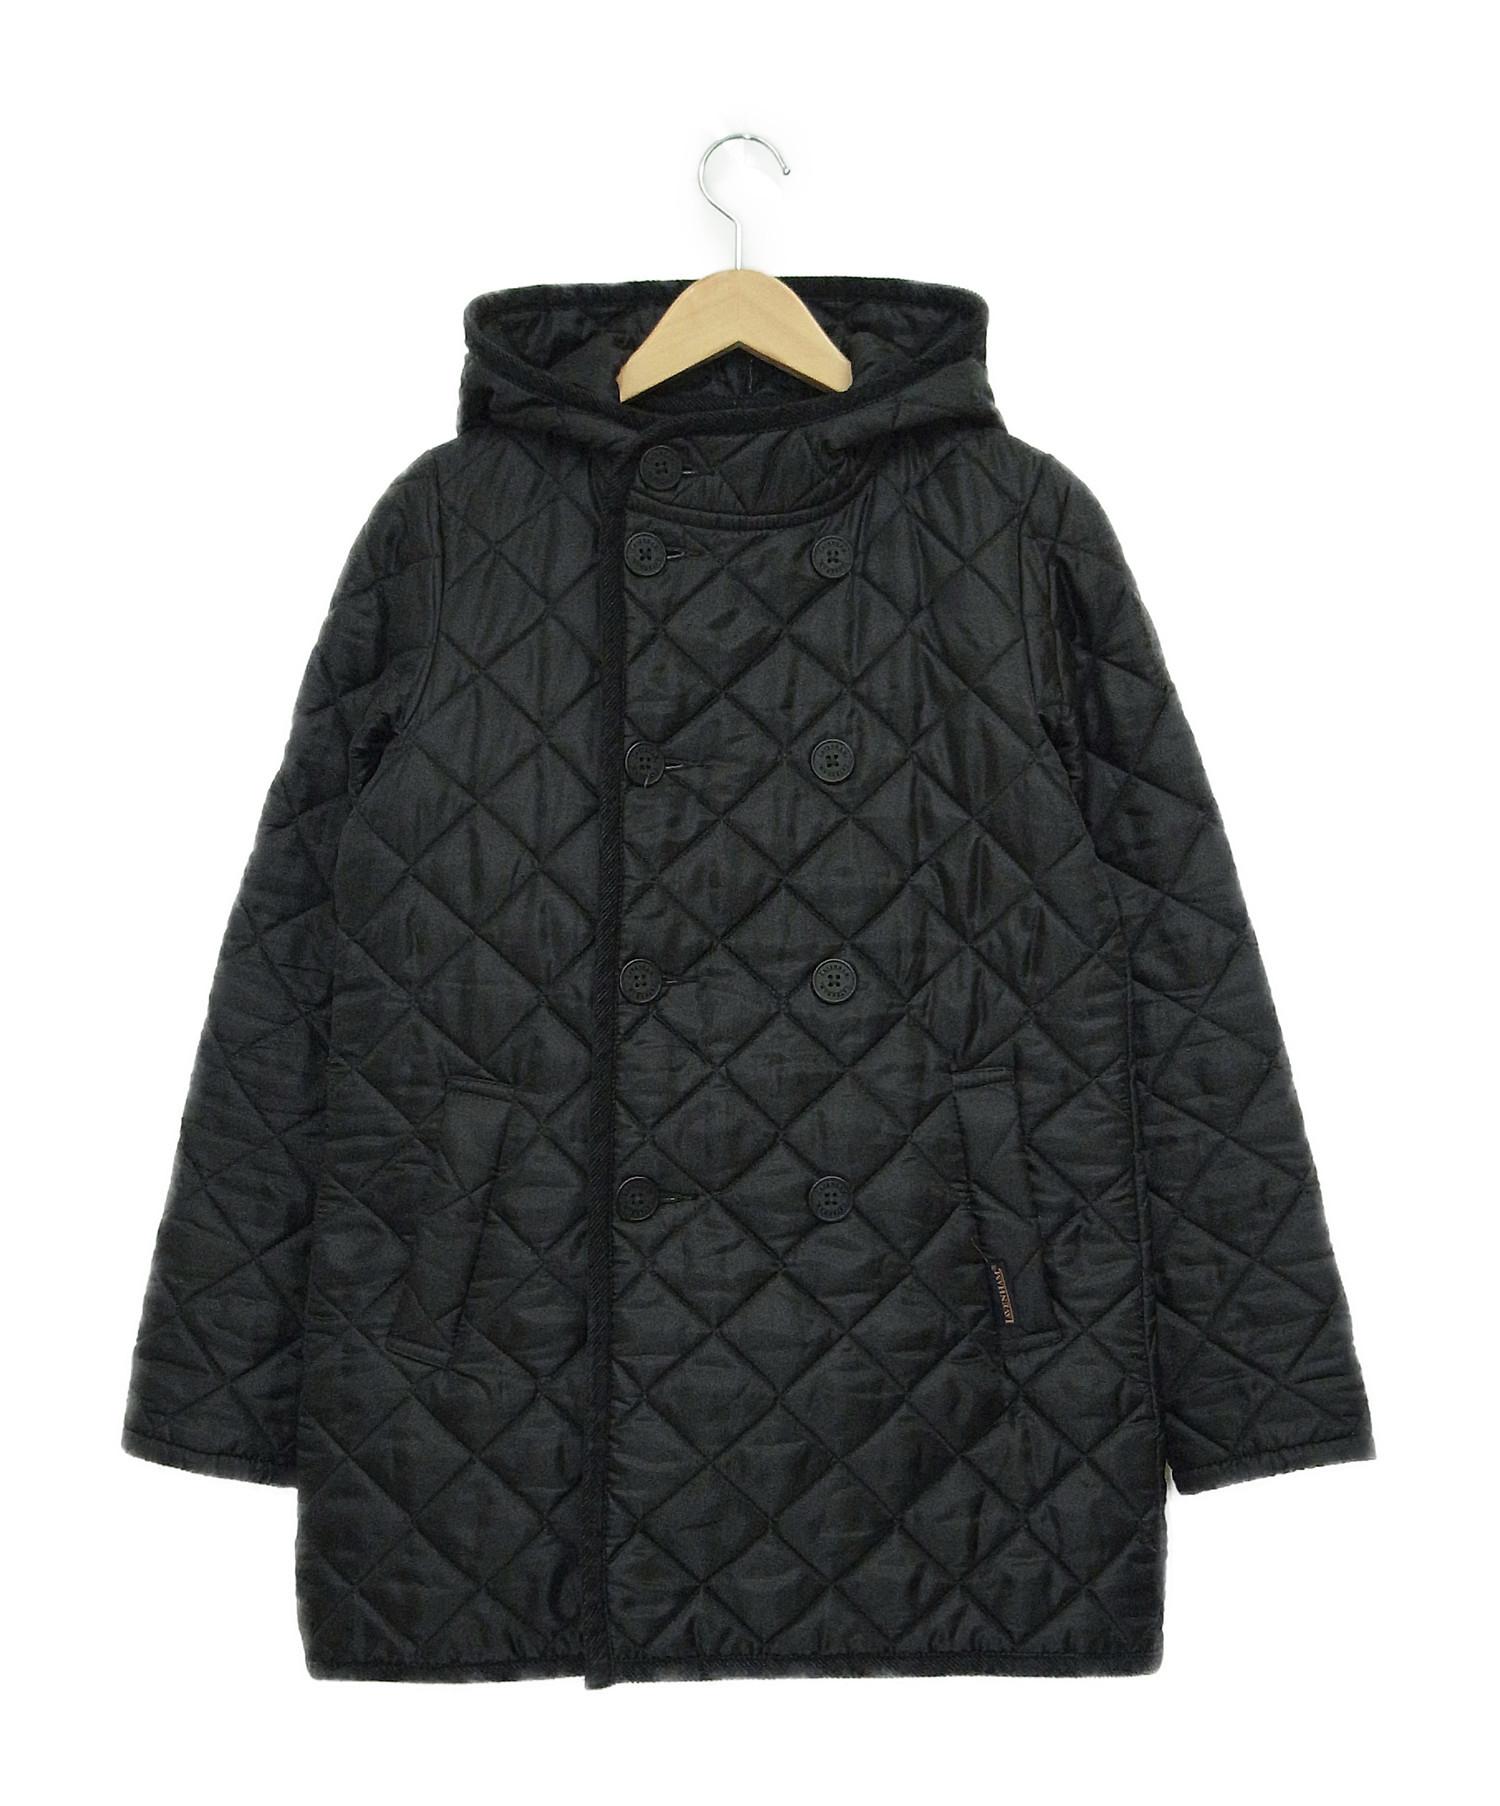 LAVENHAM (ラベンハム) ダブルブレストフーデッドキルティングジャケット ブラック サイズ:38